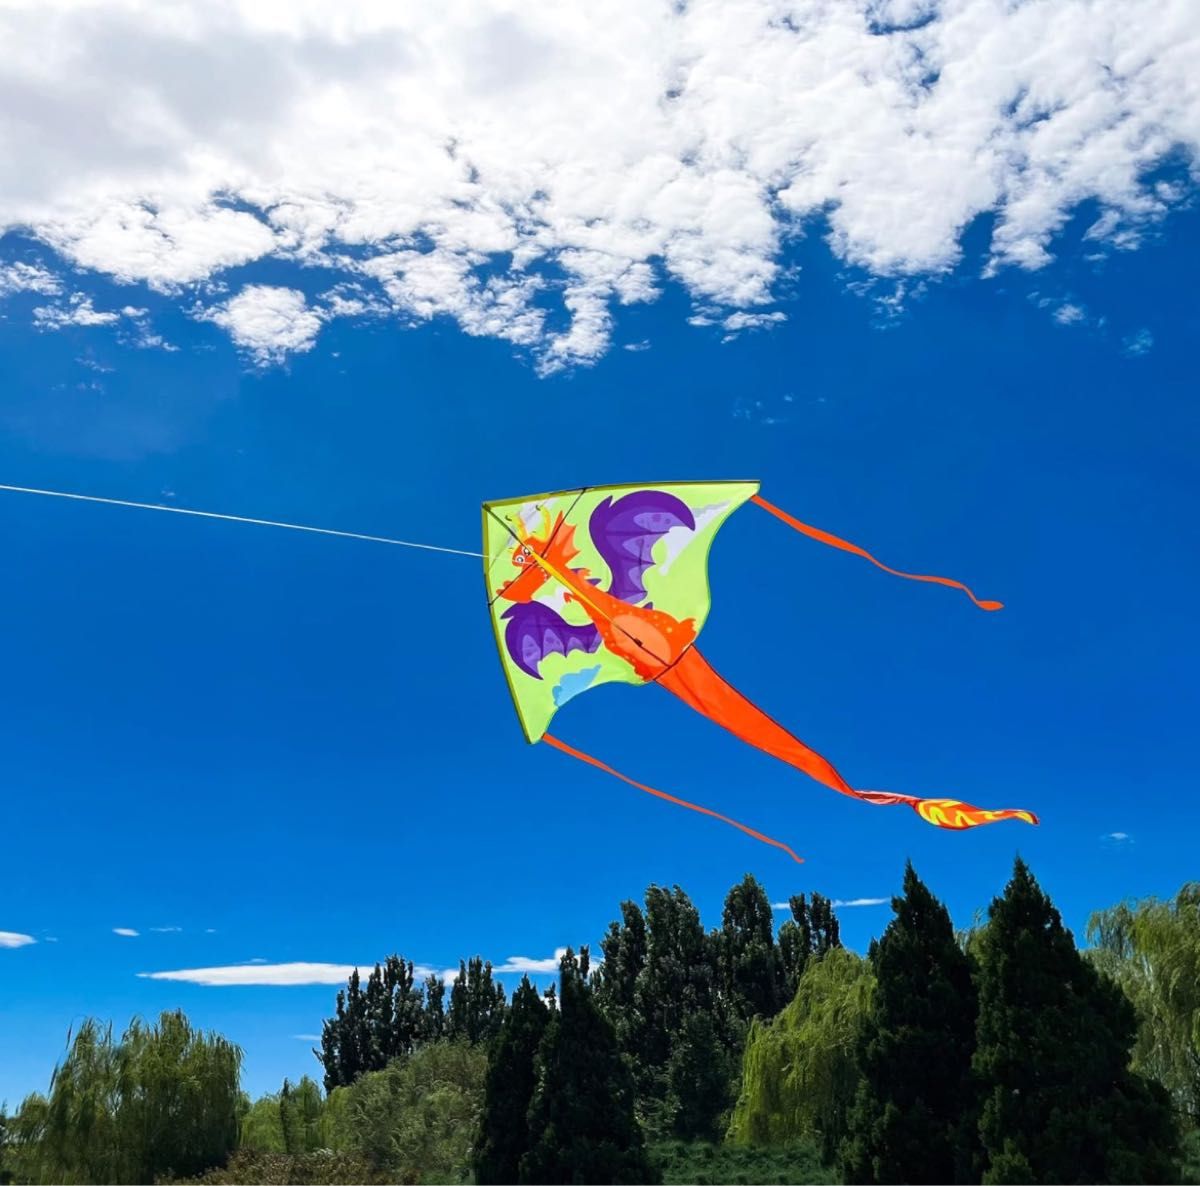 emma kites 152cm 可愛いマーメイド ドラゴン 三角凧 カイト 100M凧糸とハンドルセット 収納バッグ付き